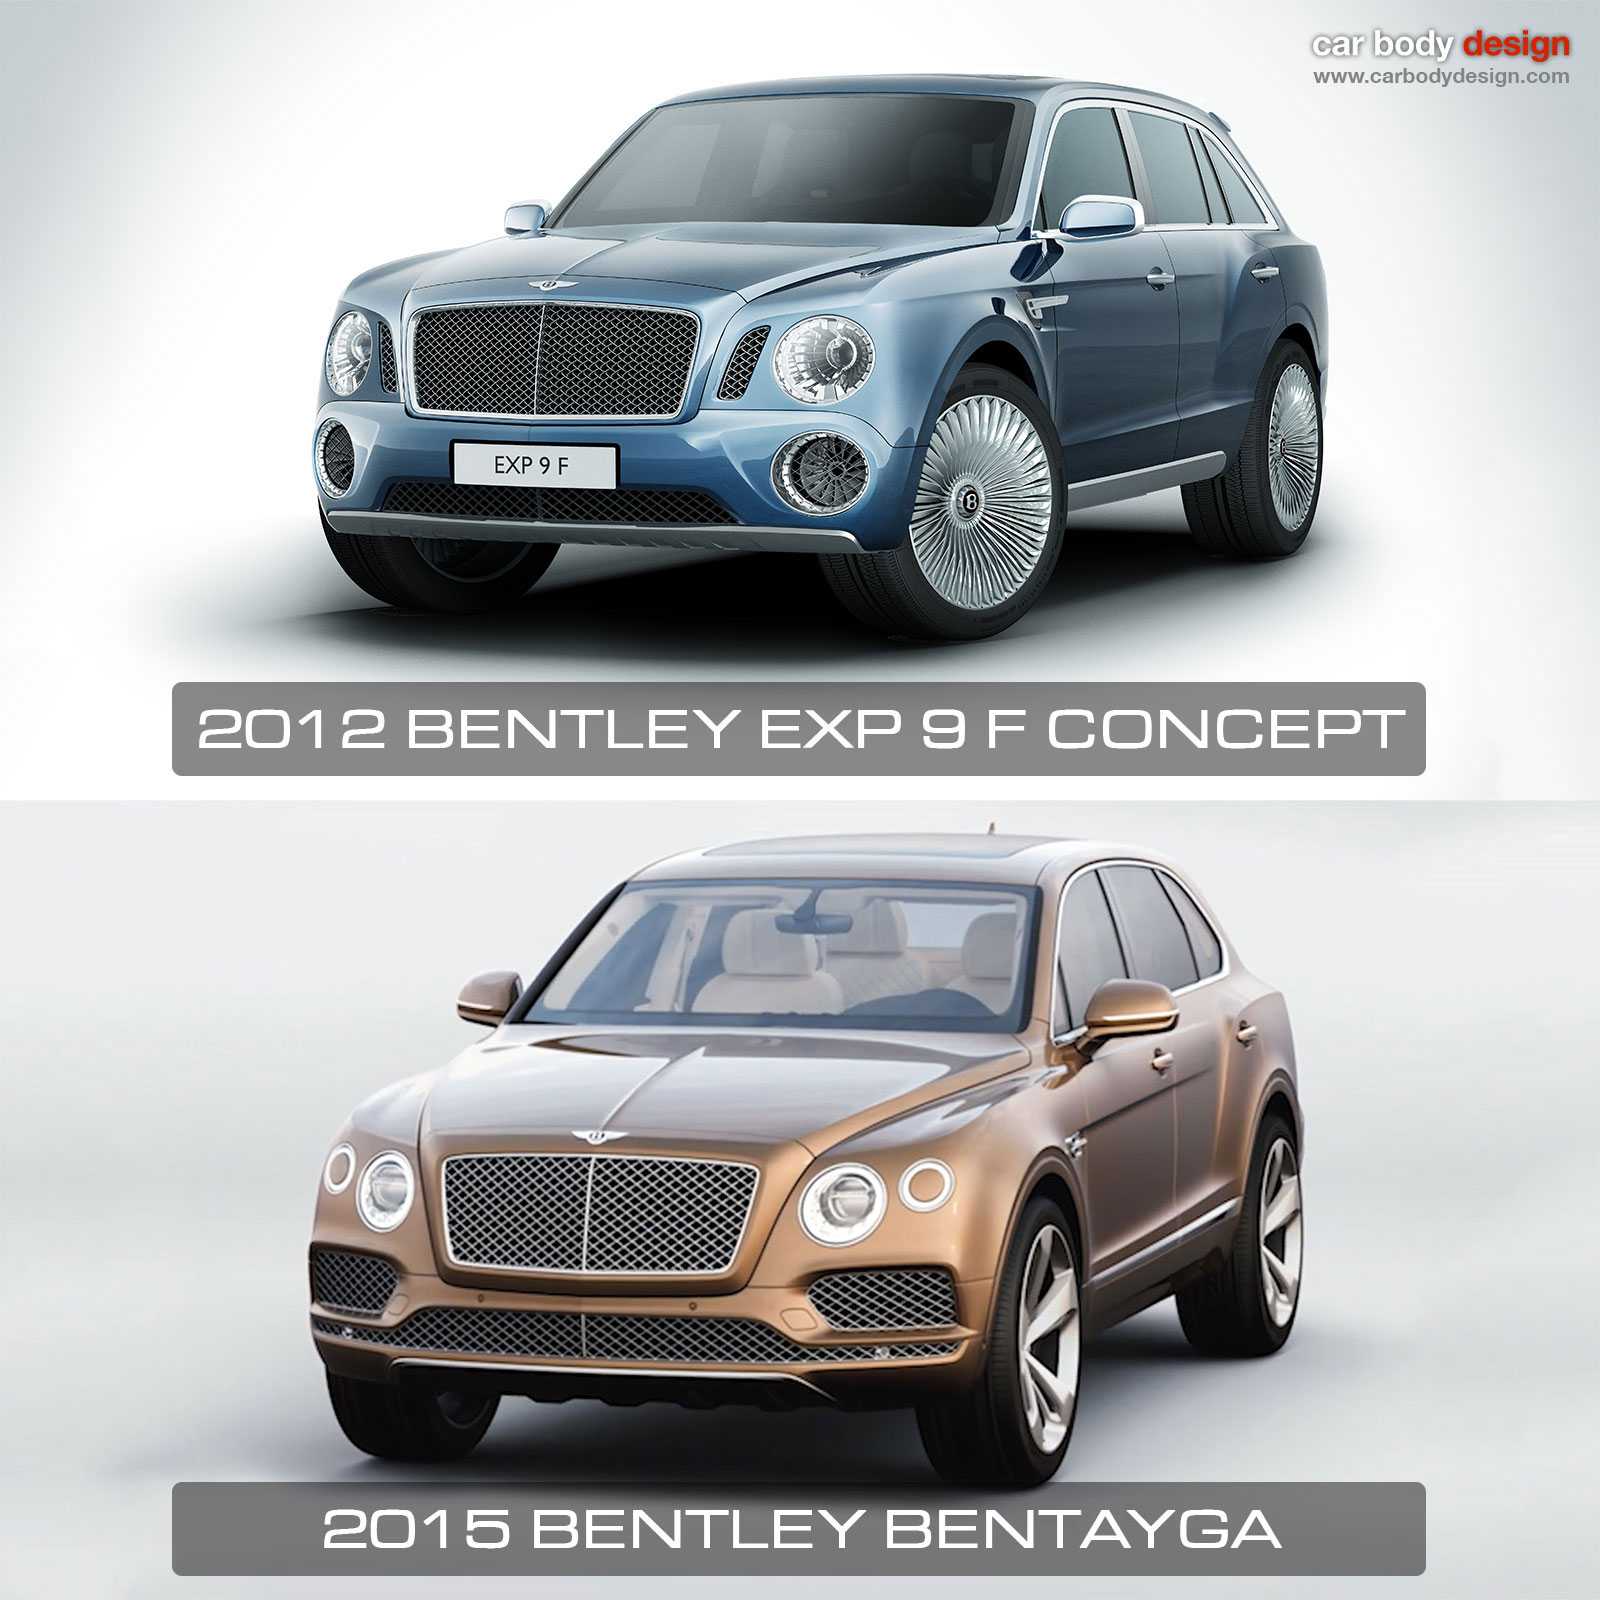 Bentley exp 9 f - википедия